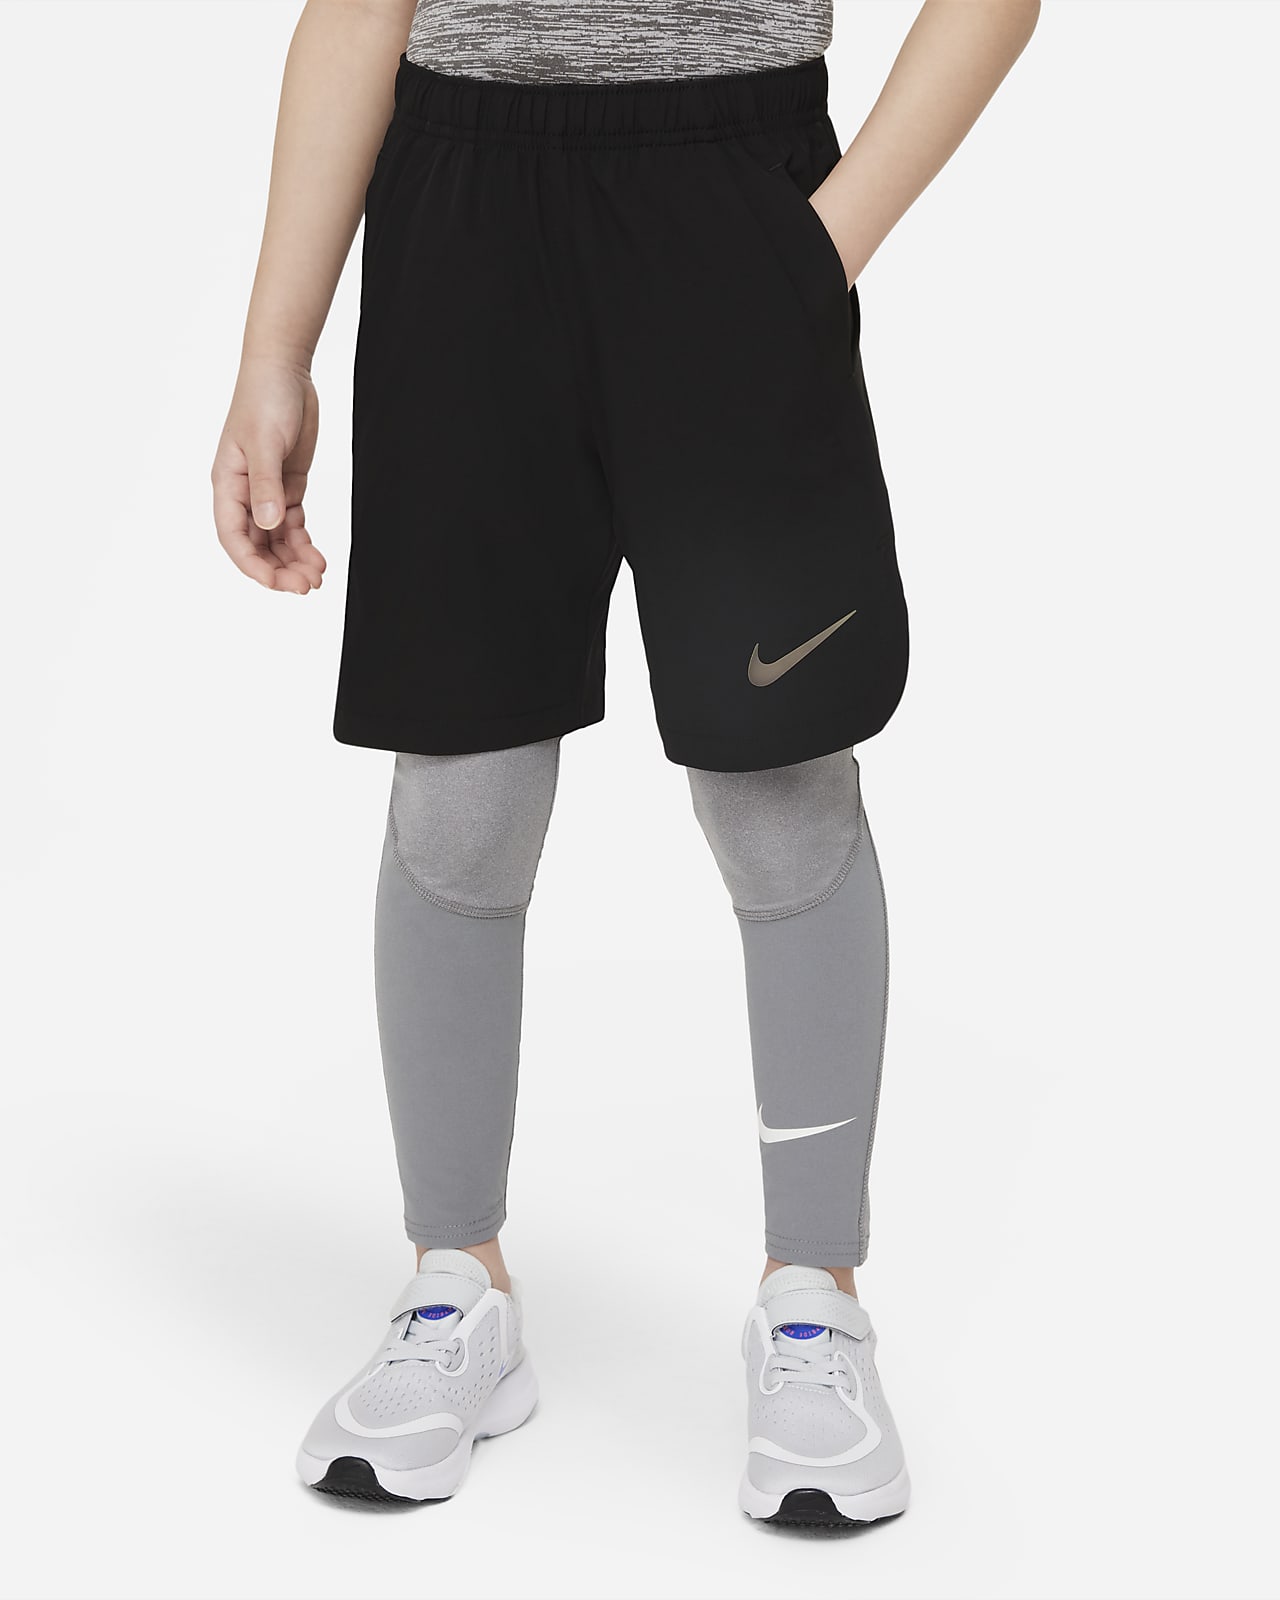 cortar a tajos Deformar de ahora en adelante Nike Pro Little Kids' Tights. Nike.com